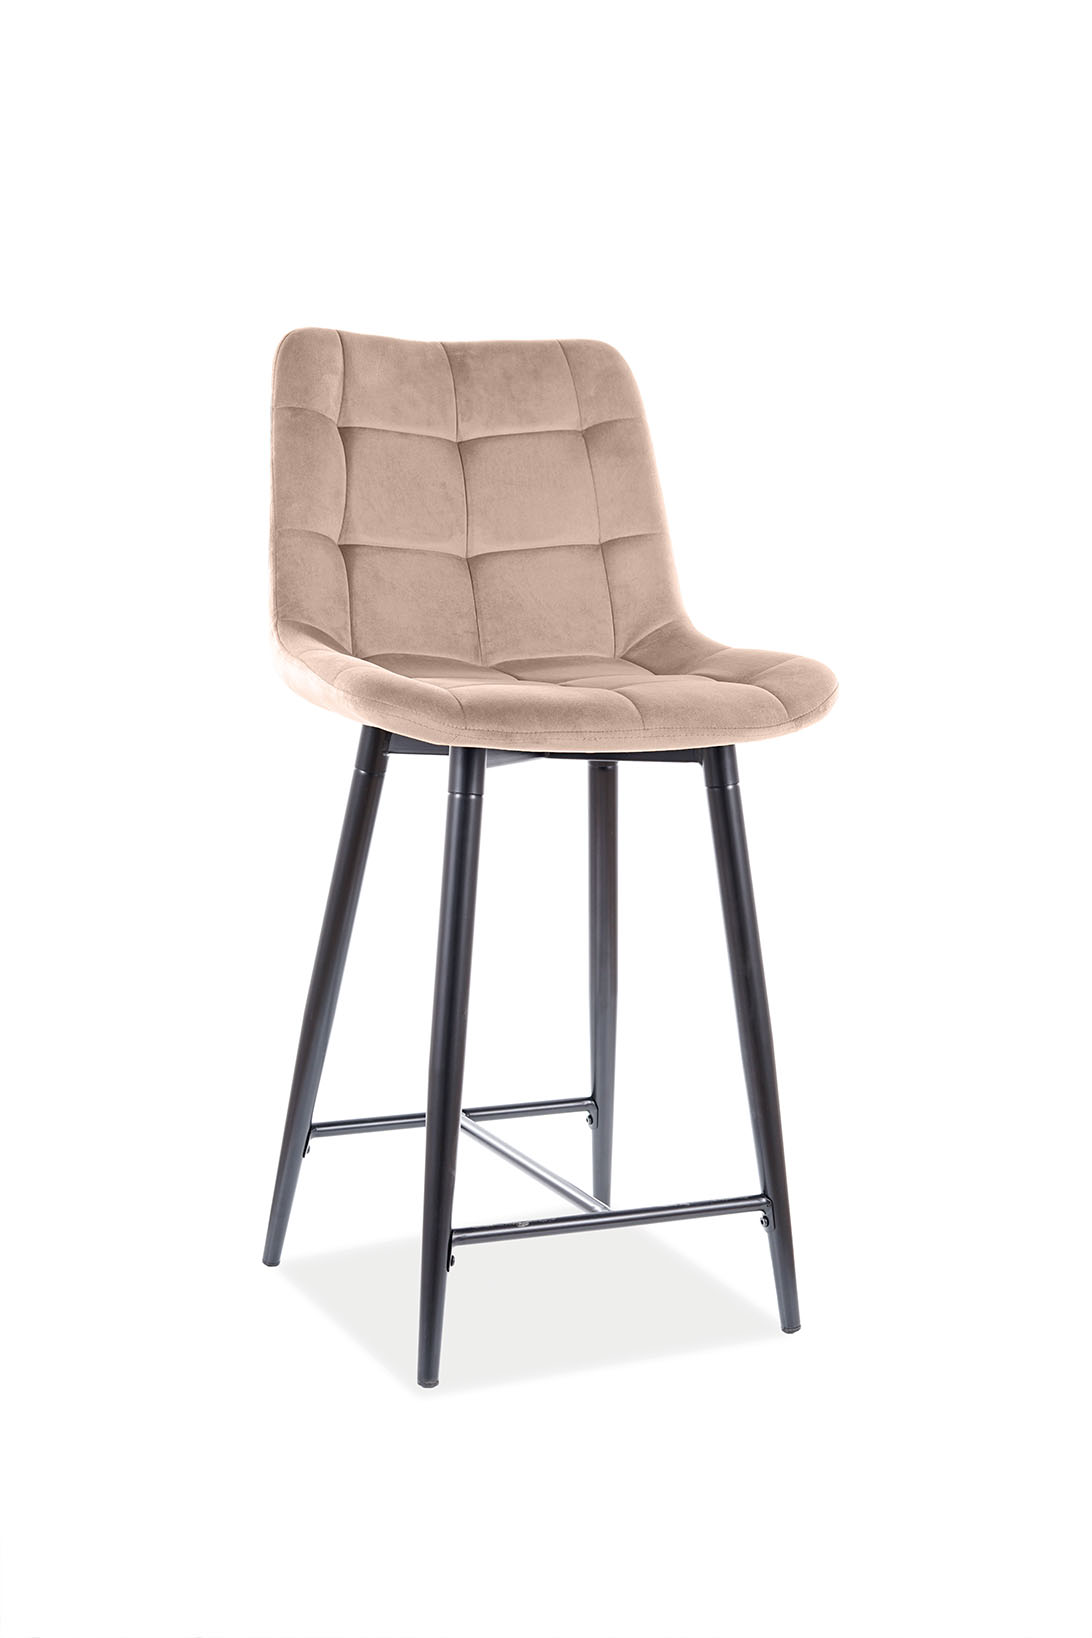 E-shop KIK barová stolička, Bluvel 28 - krémová